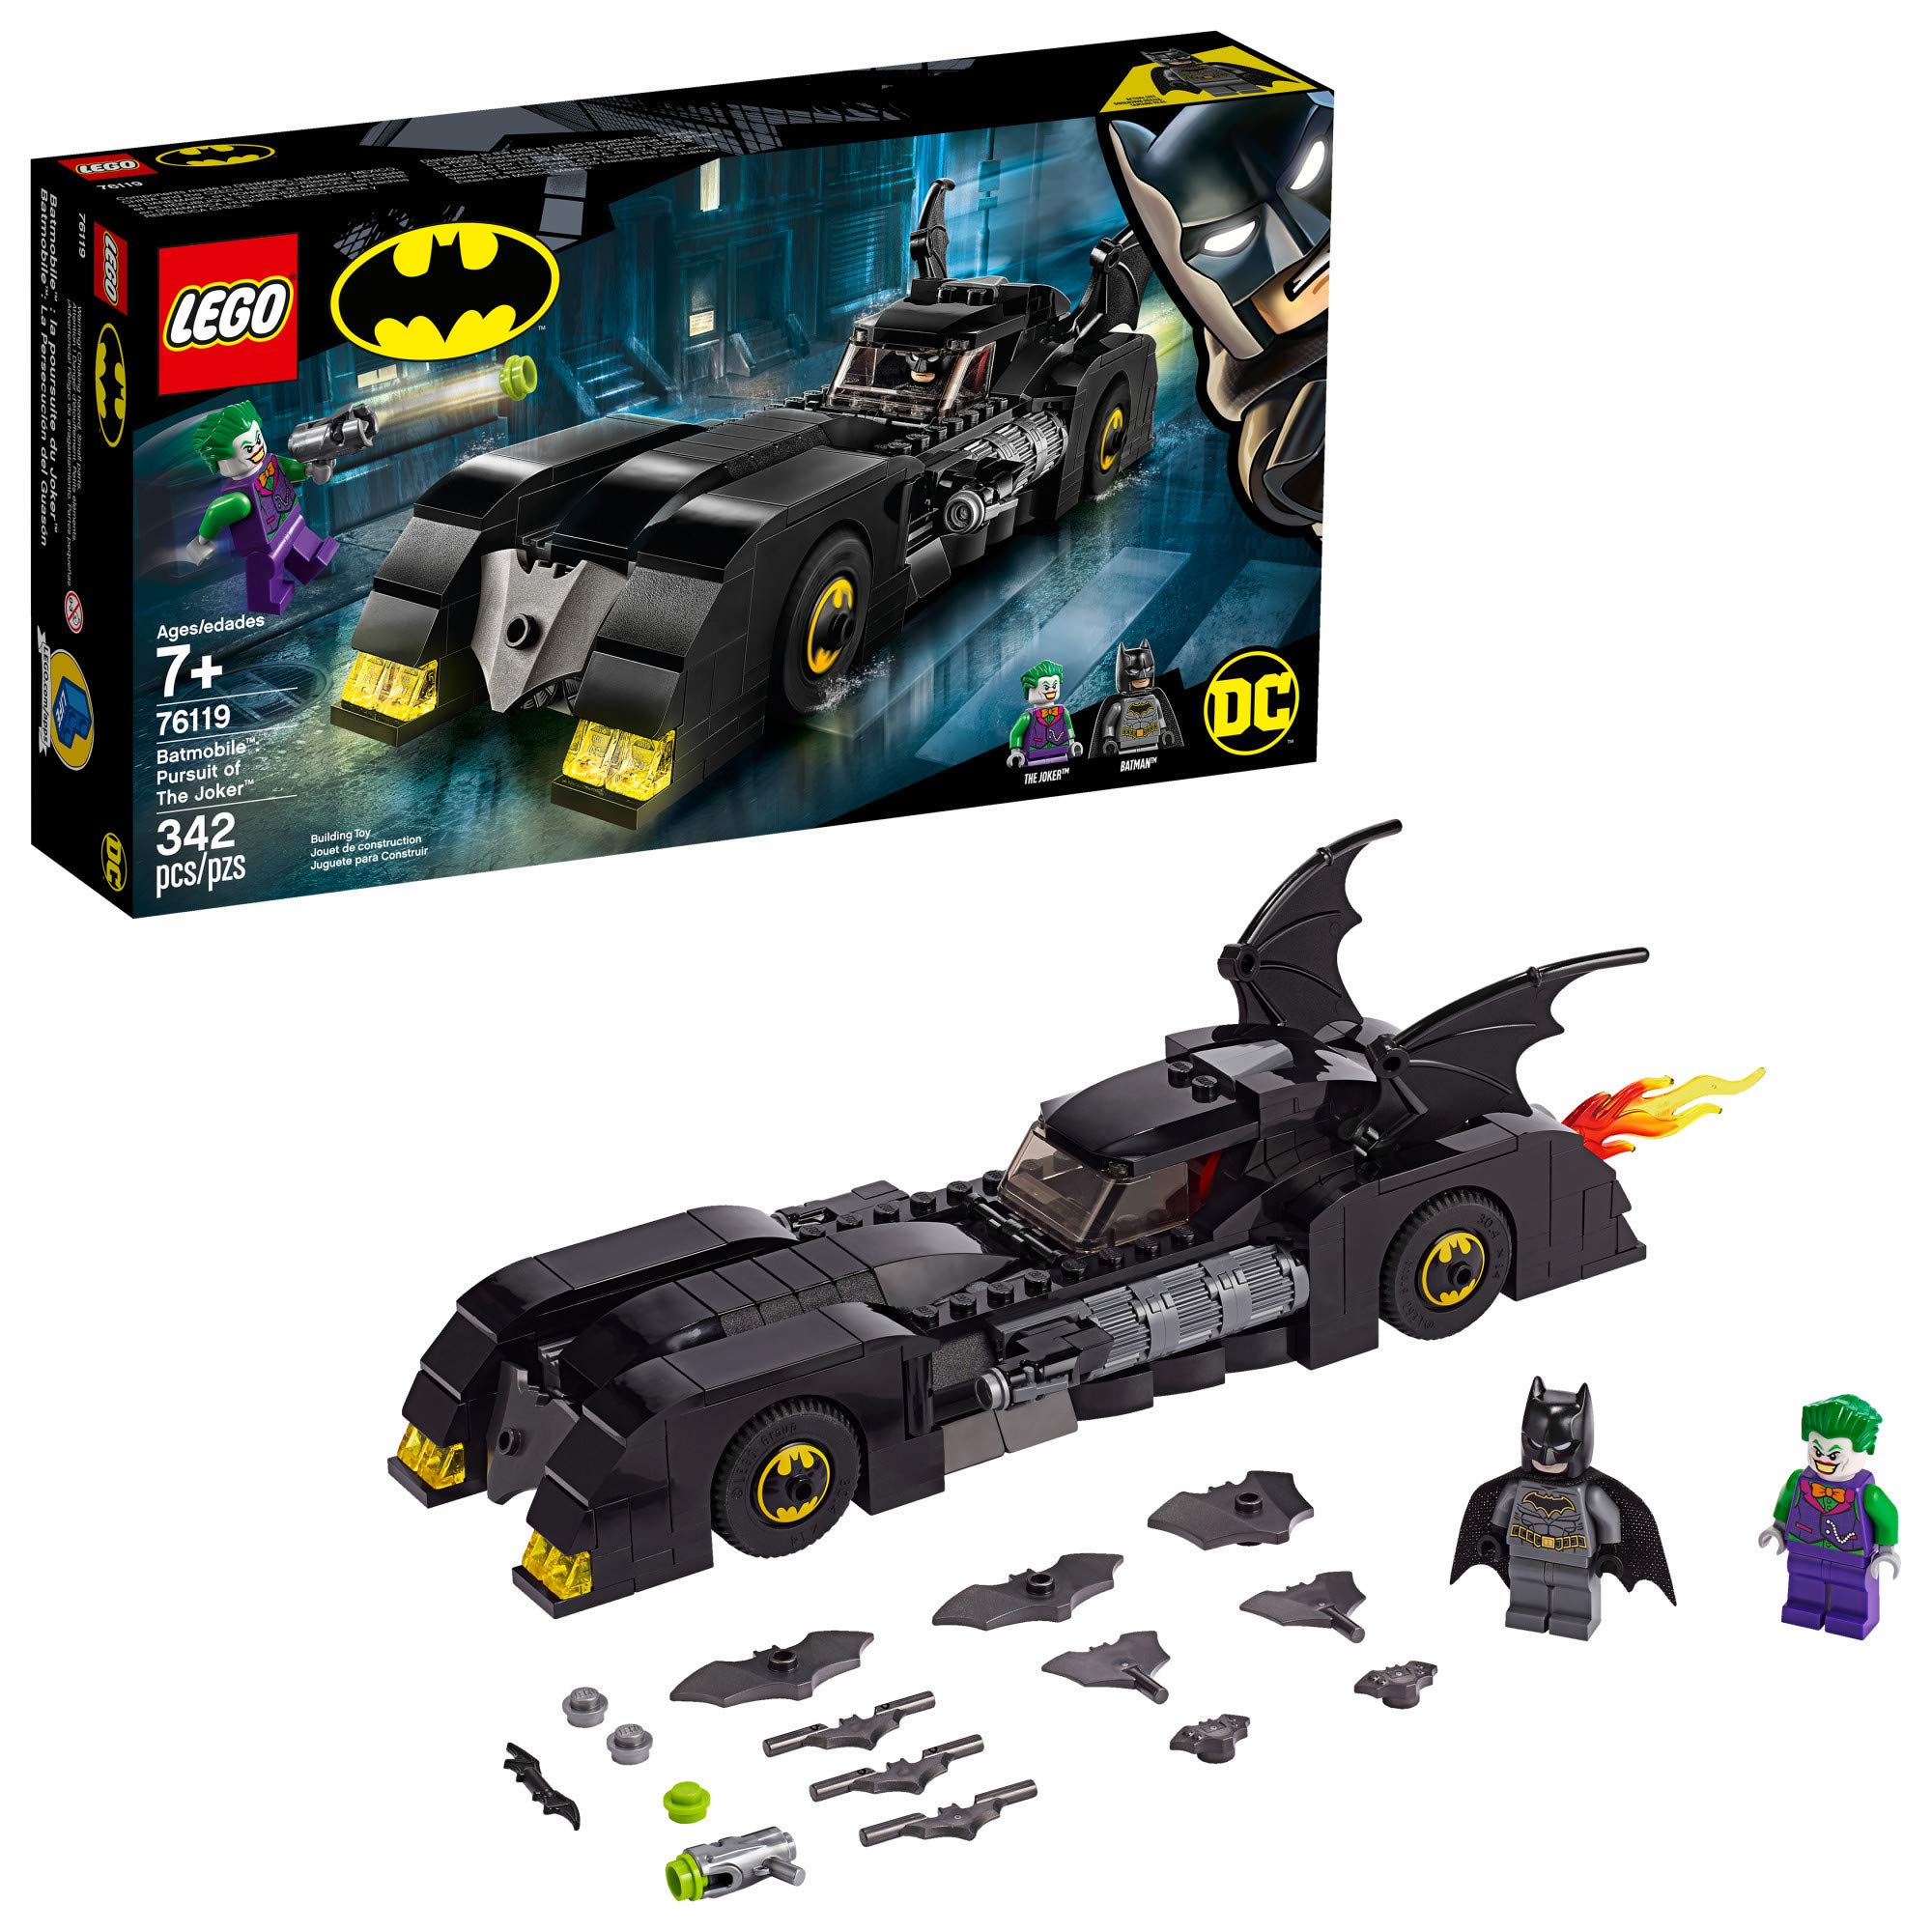 LEGO DC Batman Batmobile: Pursuit of The Joker 76119 Building Kit, New 2019 (342 Pieces)